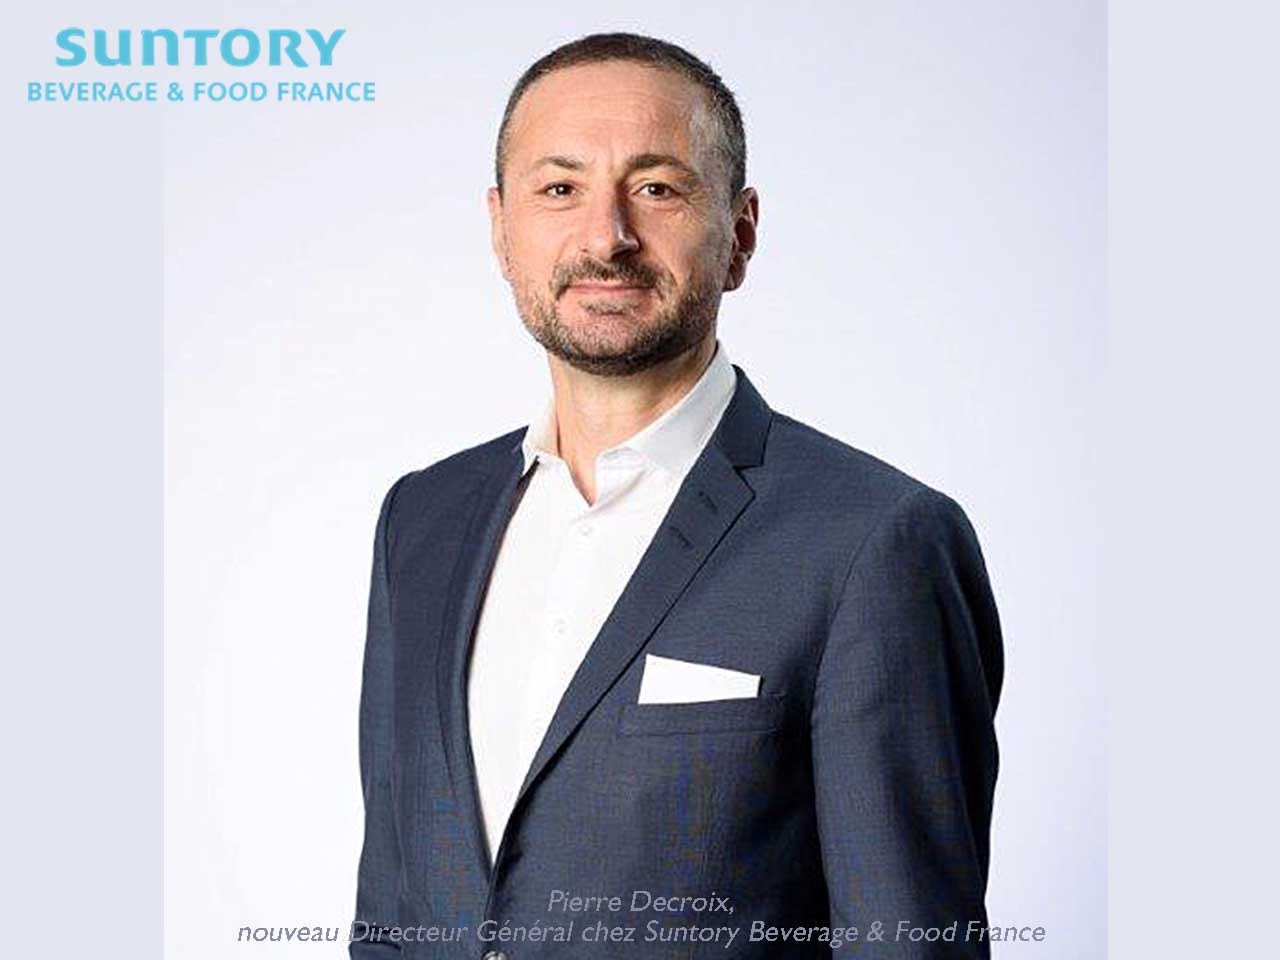 Pierre Decroix est nommé Directeur Général chez Suntory Beverage & Food France